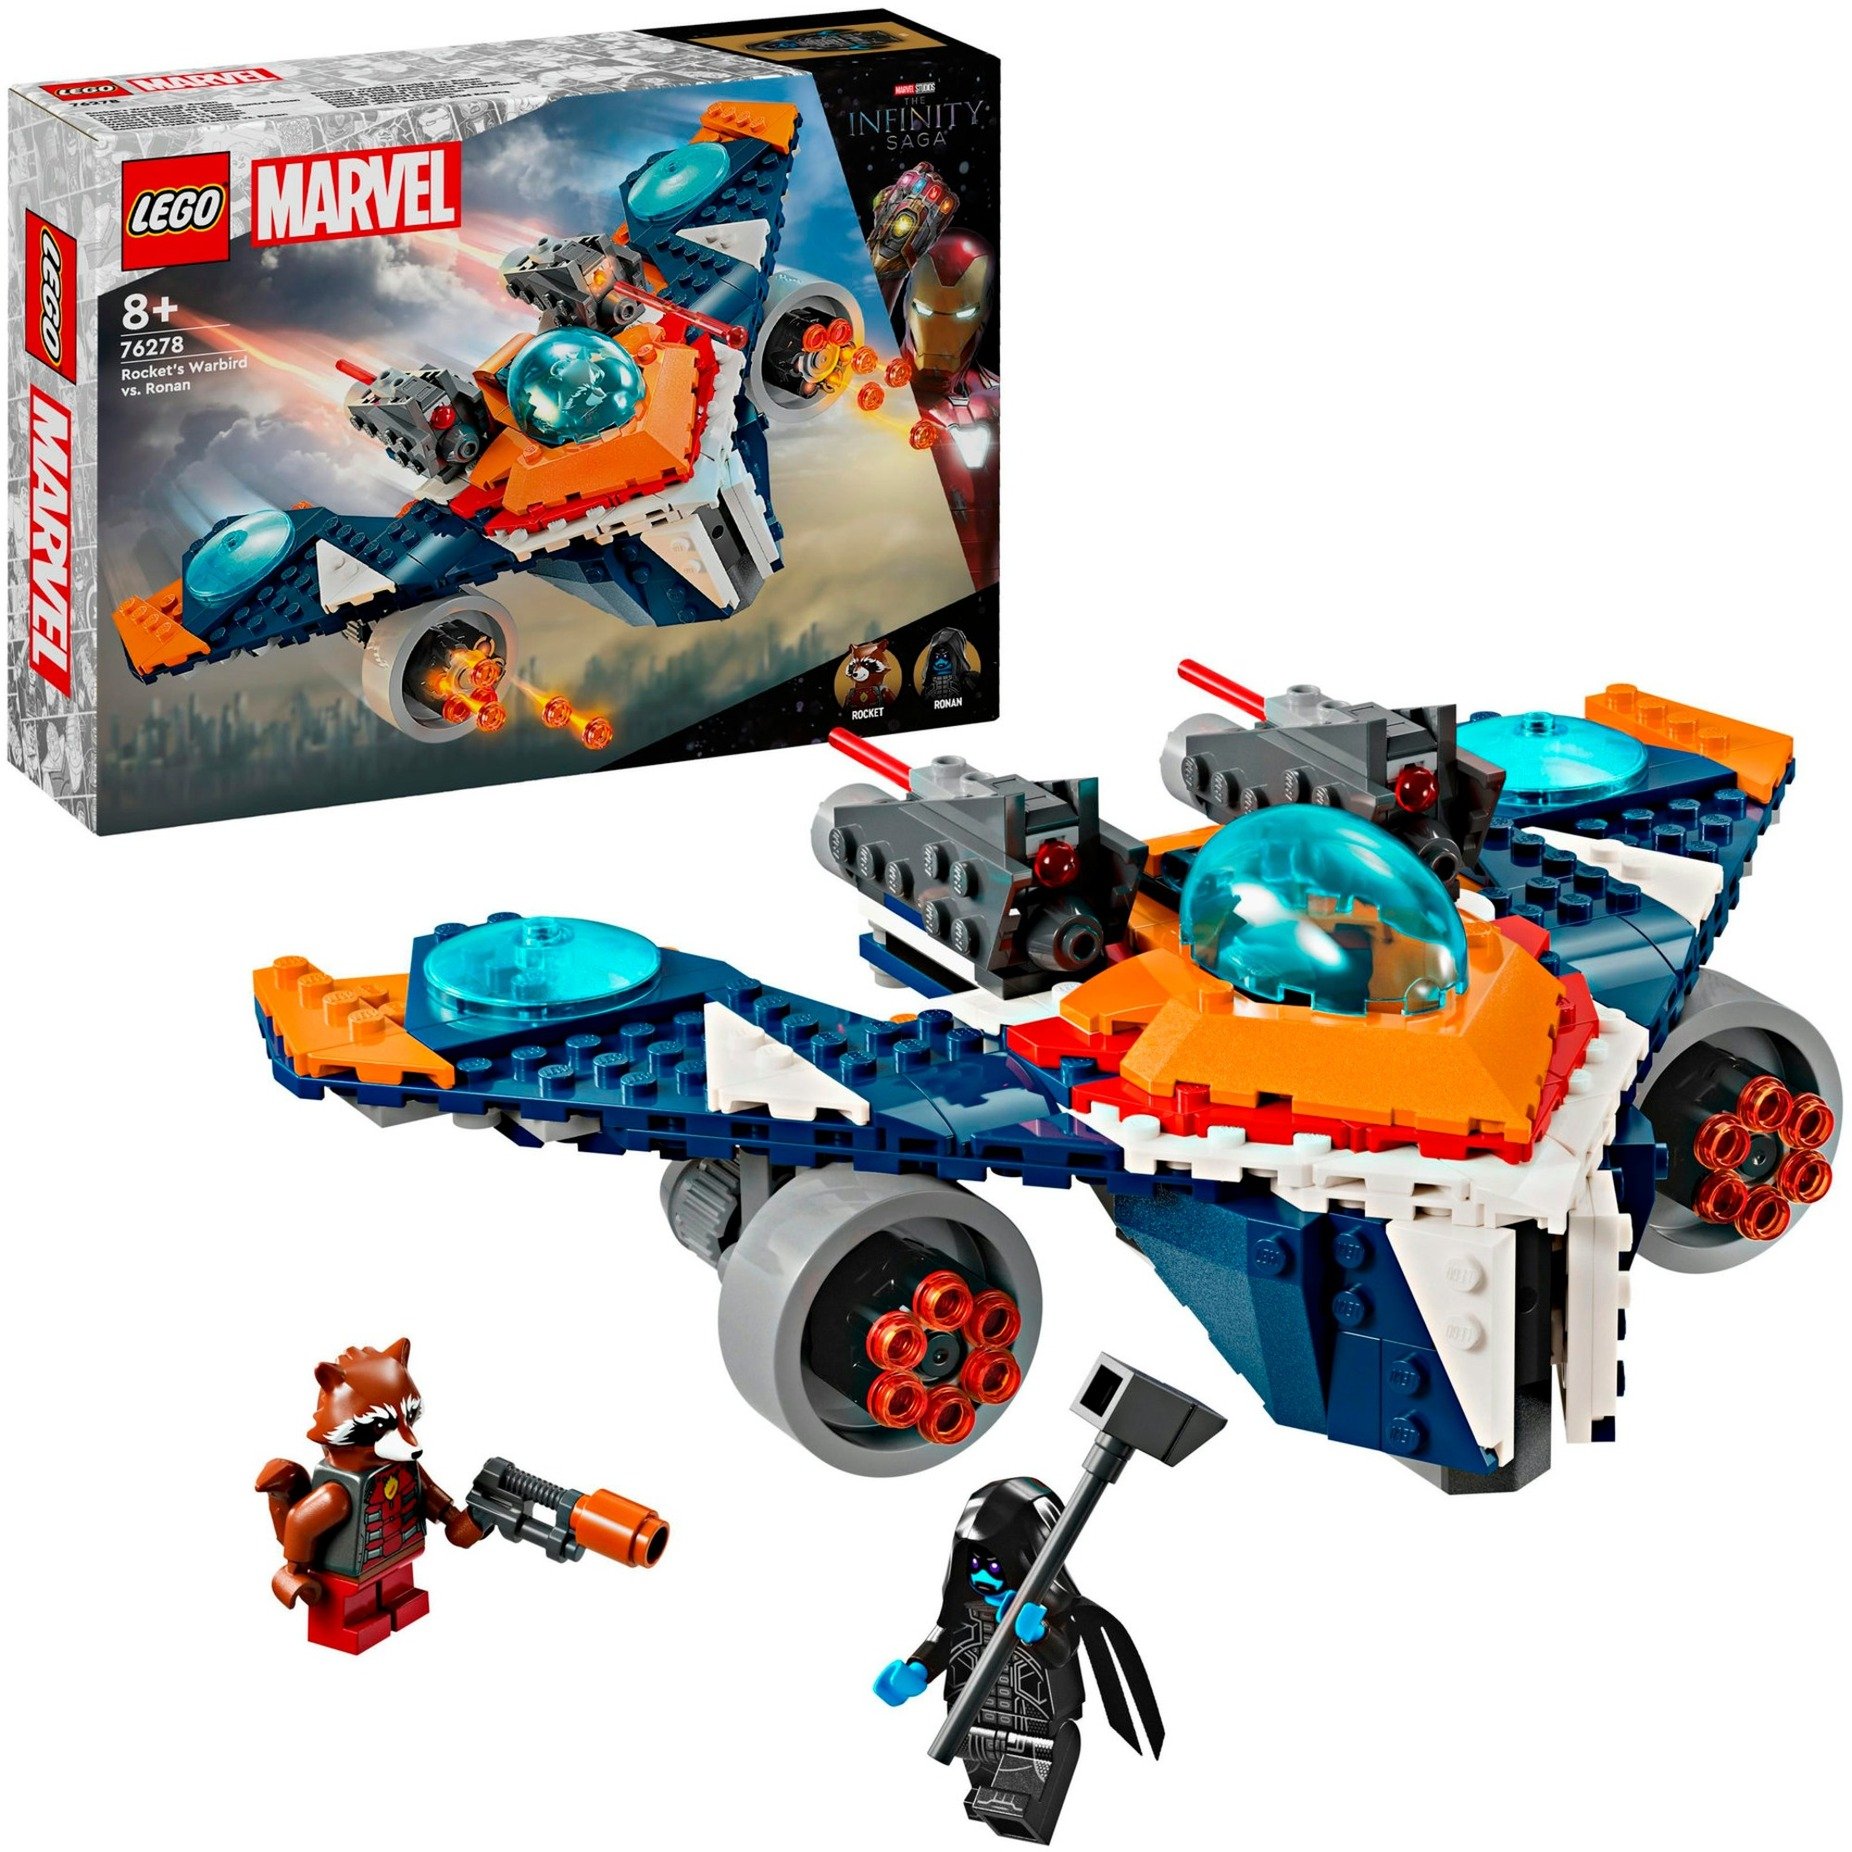 76278 Marvel Super Heroes Rockets Raumschiff vs. Ronan, Konstruktionsspielzeug von Lego